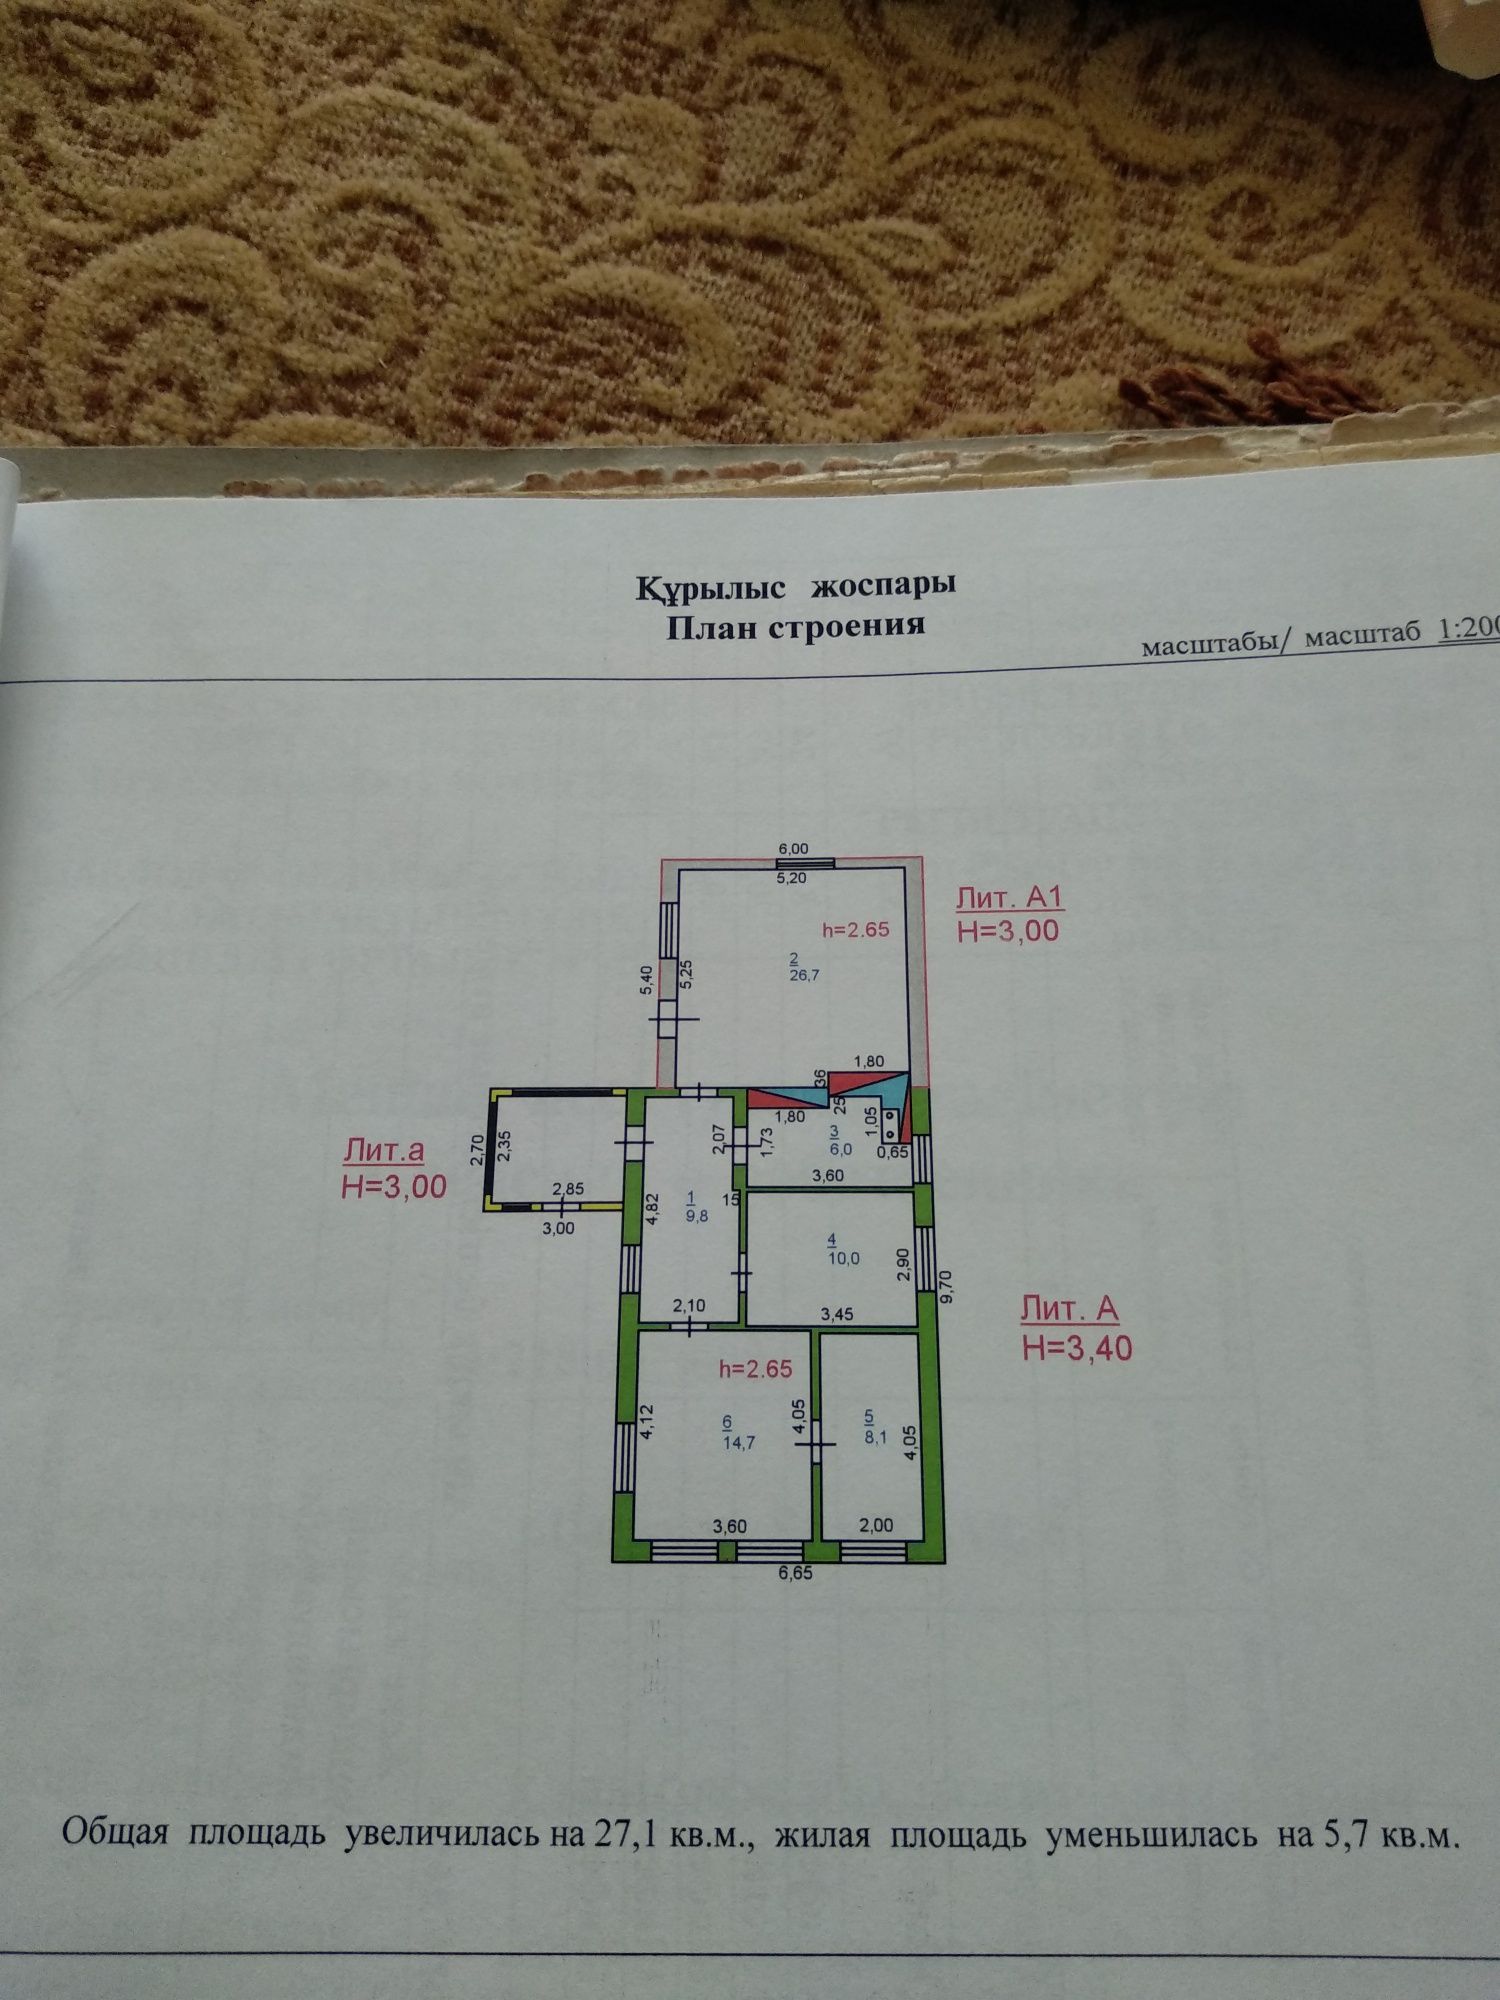 Продам дом 4 комнаты на 2 Павлодаре